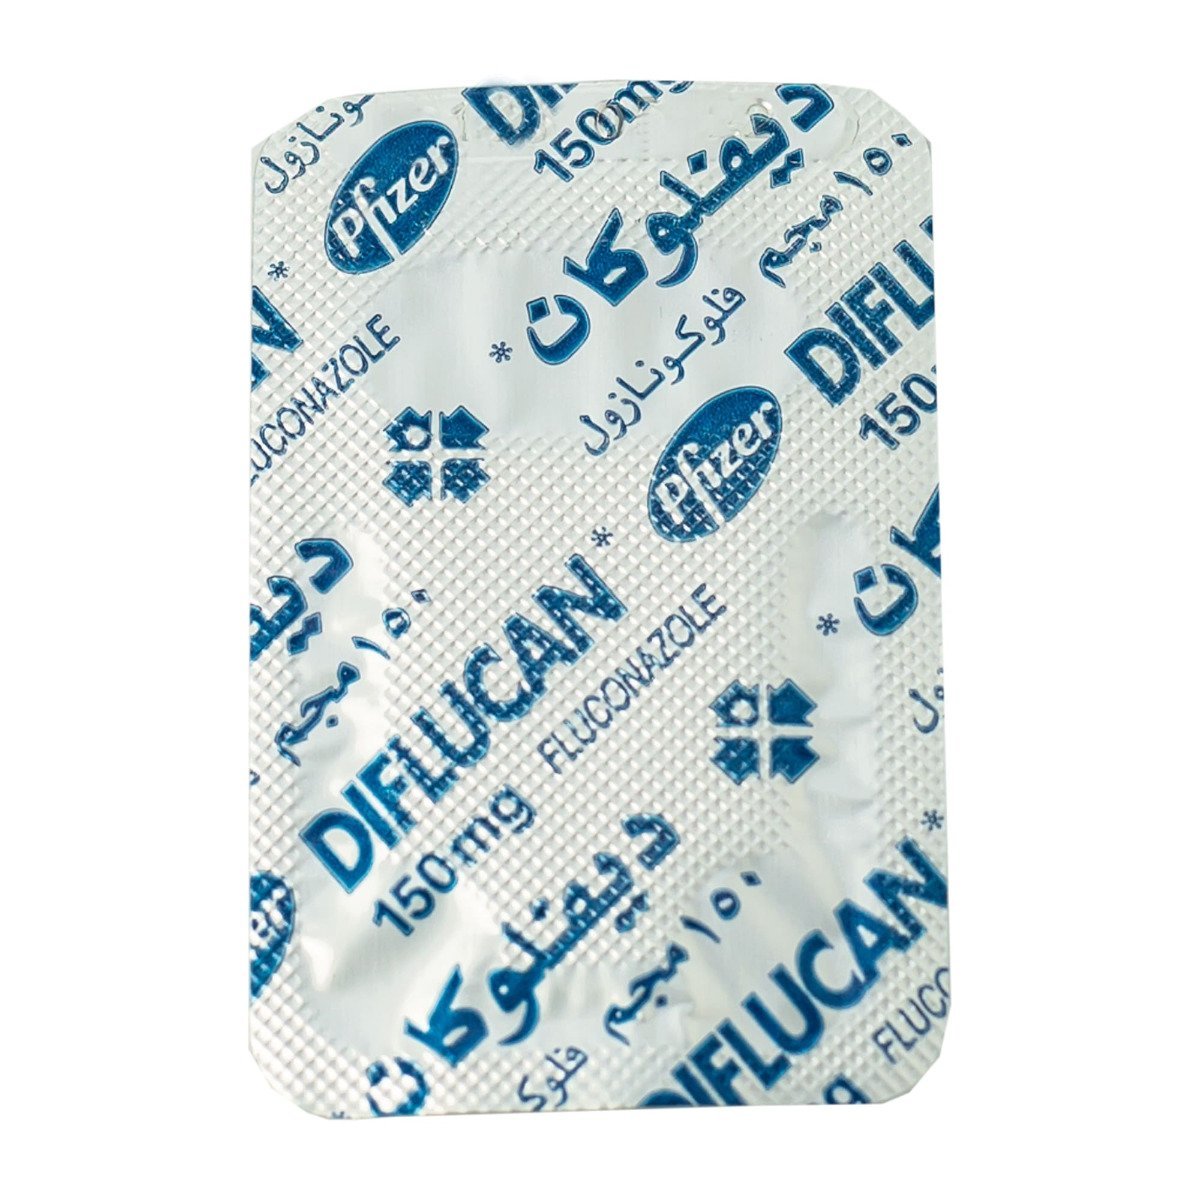 Diflucan 150 mg - 1 Capsule - Bloom Pharmacy